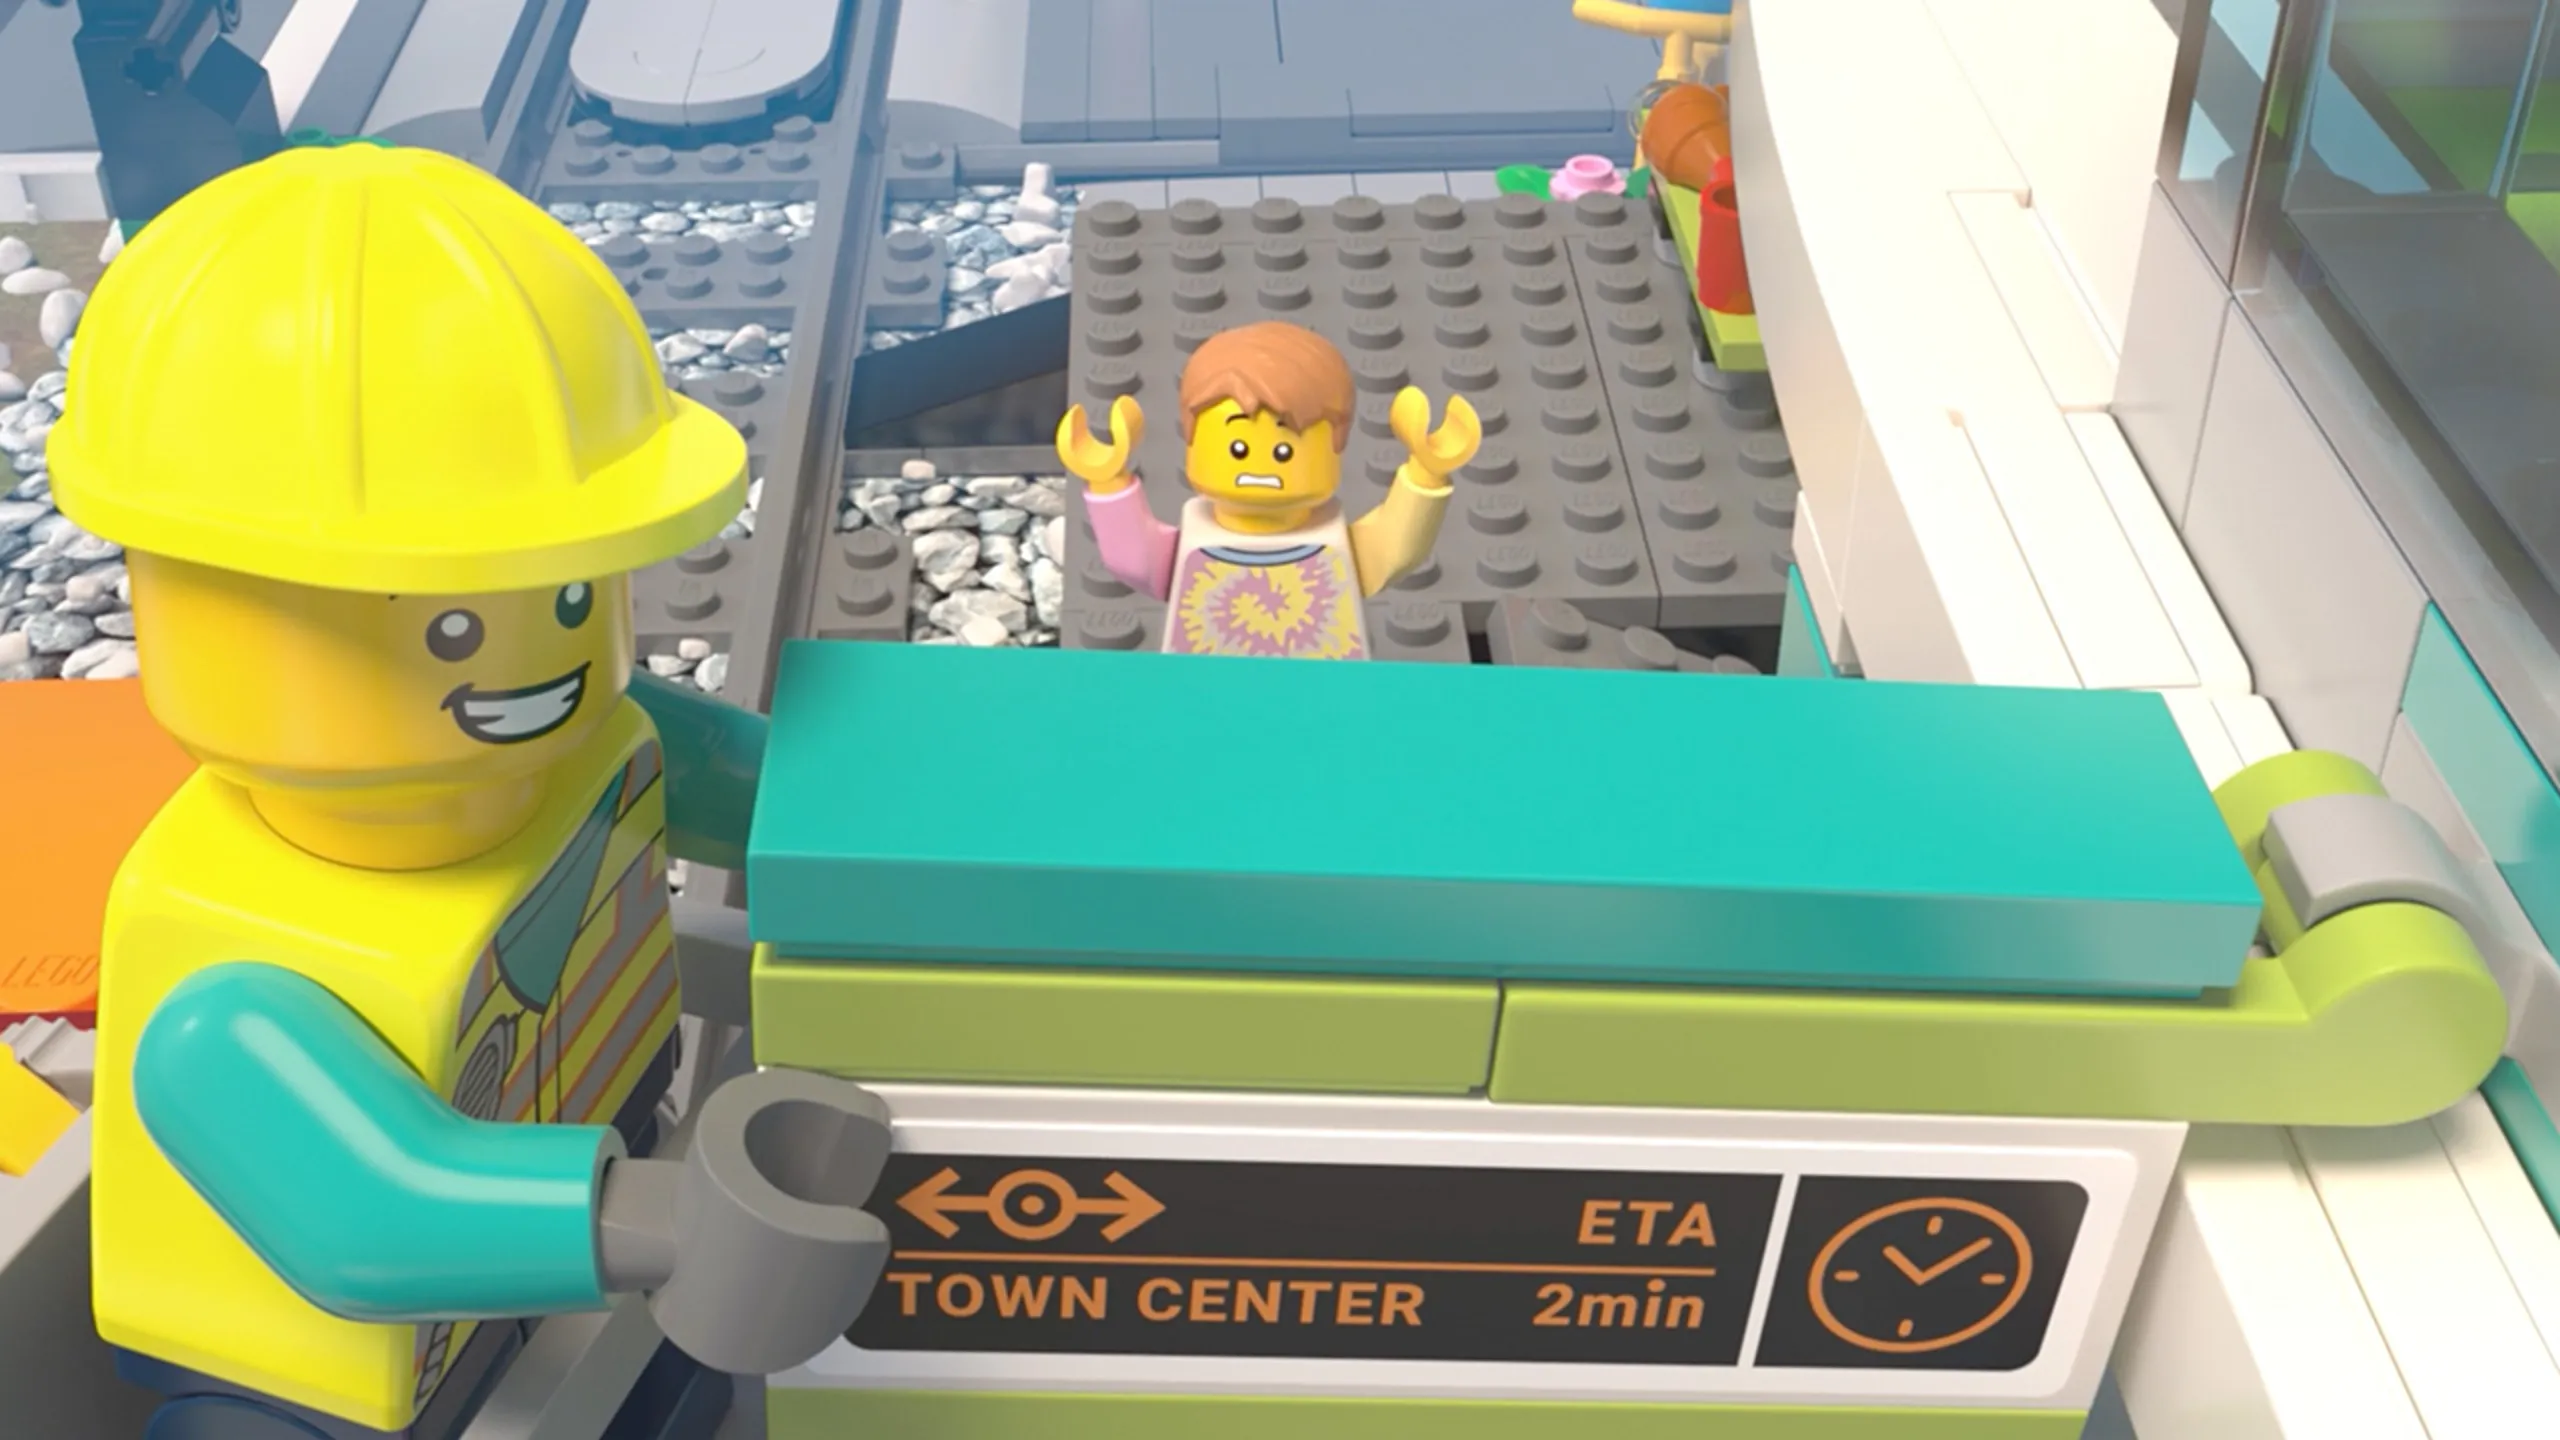 Scatole LEGO con Cassetto Verde 25 x 25 x 18 cm ? Disponibile su Cookinglife